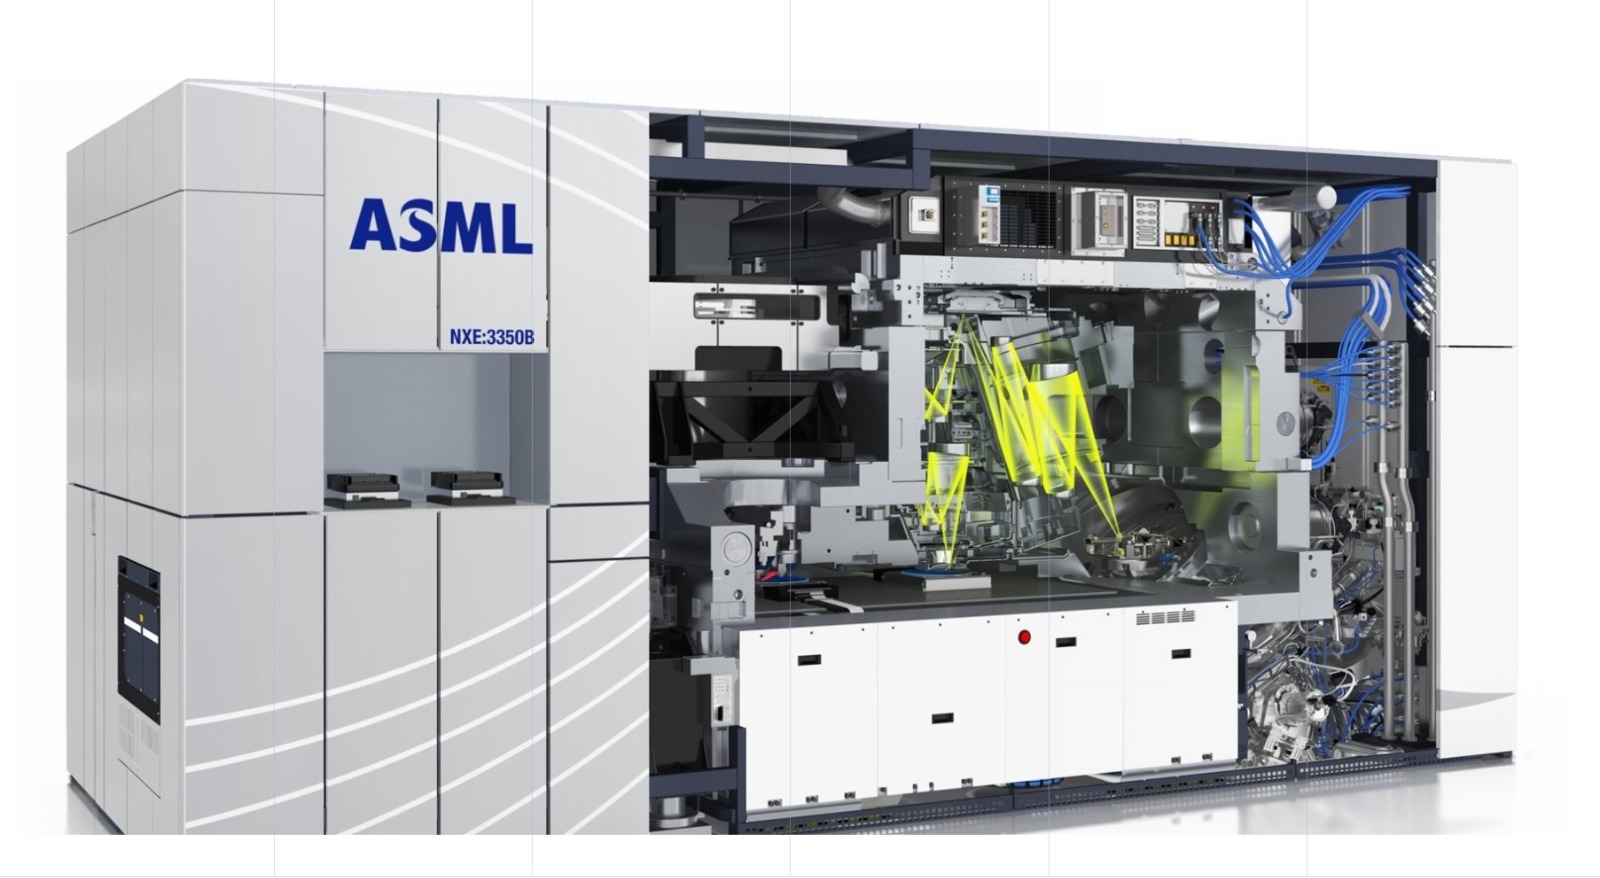 أحدث ماكينات تصنيع أشباه الموصلات من شركة ASML الهولندية